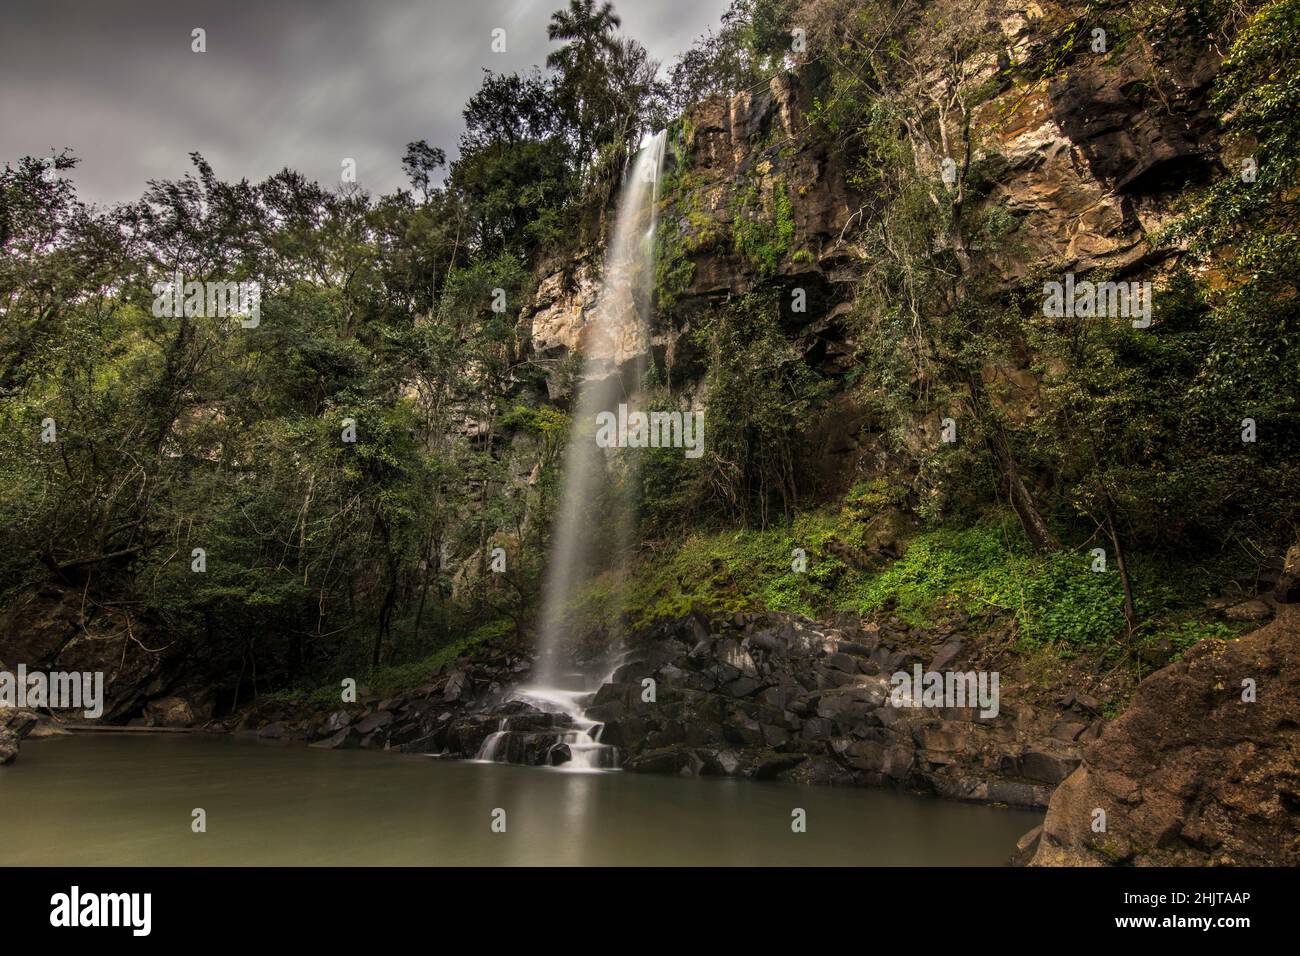 Sutile Wassertropfen im Cataratas del Iguazú Nationalpark, genannt Salto Escondido (versteckter Sprung) zwischen dem Dschungelwald in Misiones, Argentinien Stockfoto